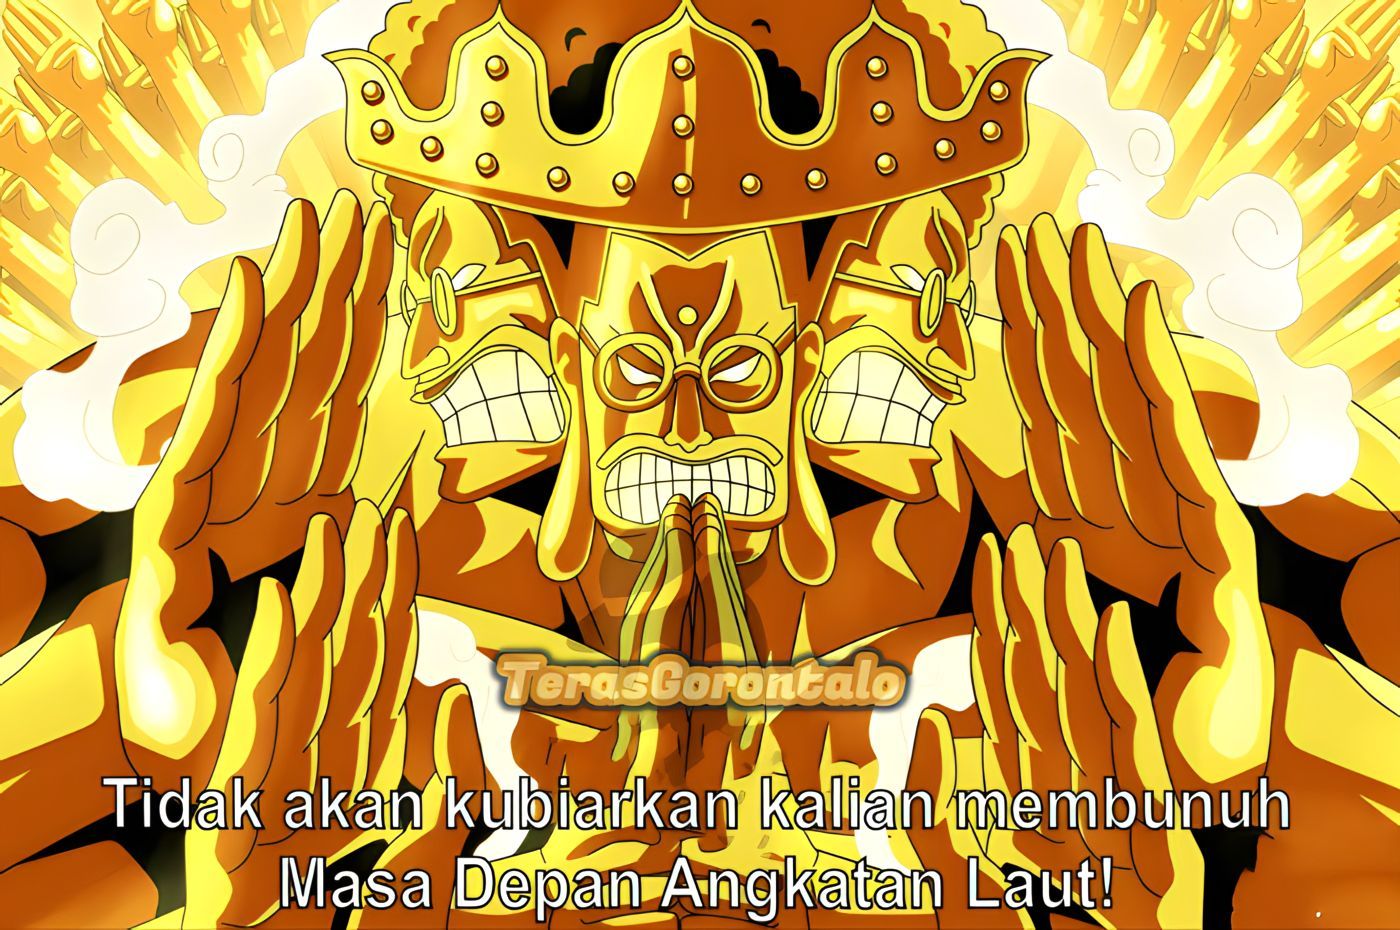 One Piece: Sengoku Murka dan Mengamuk Setelah Mendengar Kabar Monkey D Garp, Ternyata Sang Buddha Emas adalah...